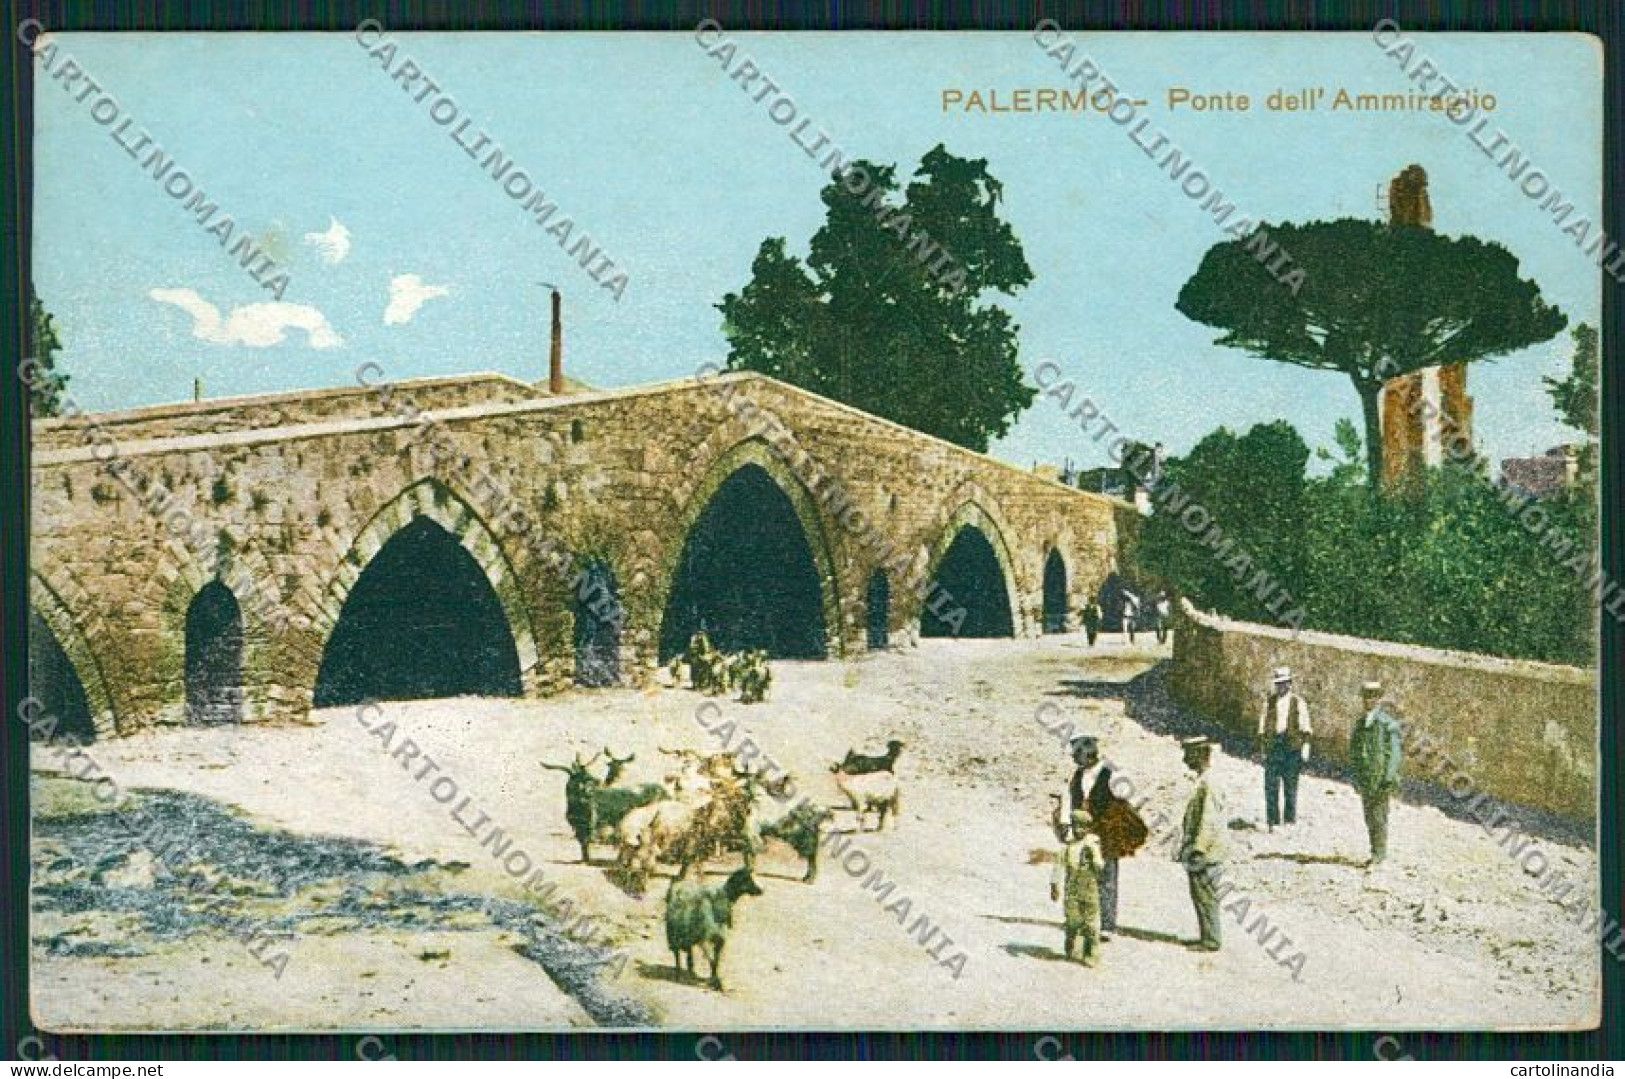 Palermo Costumi Siciliani Capre Cartolina QQ0846 - Palermo